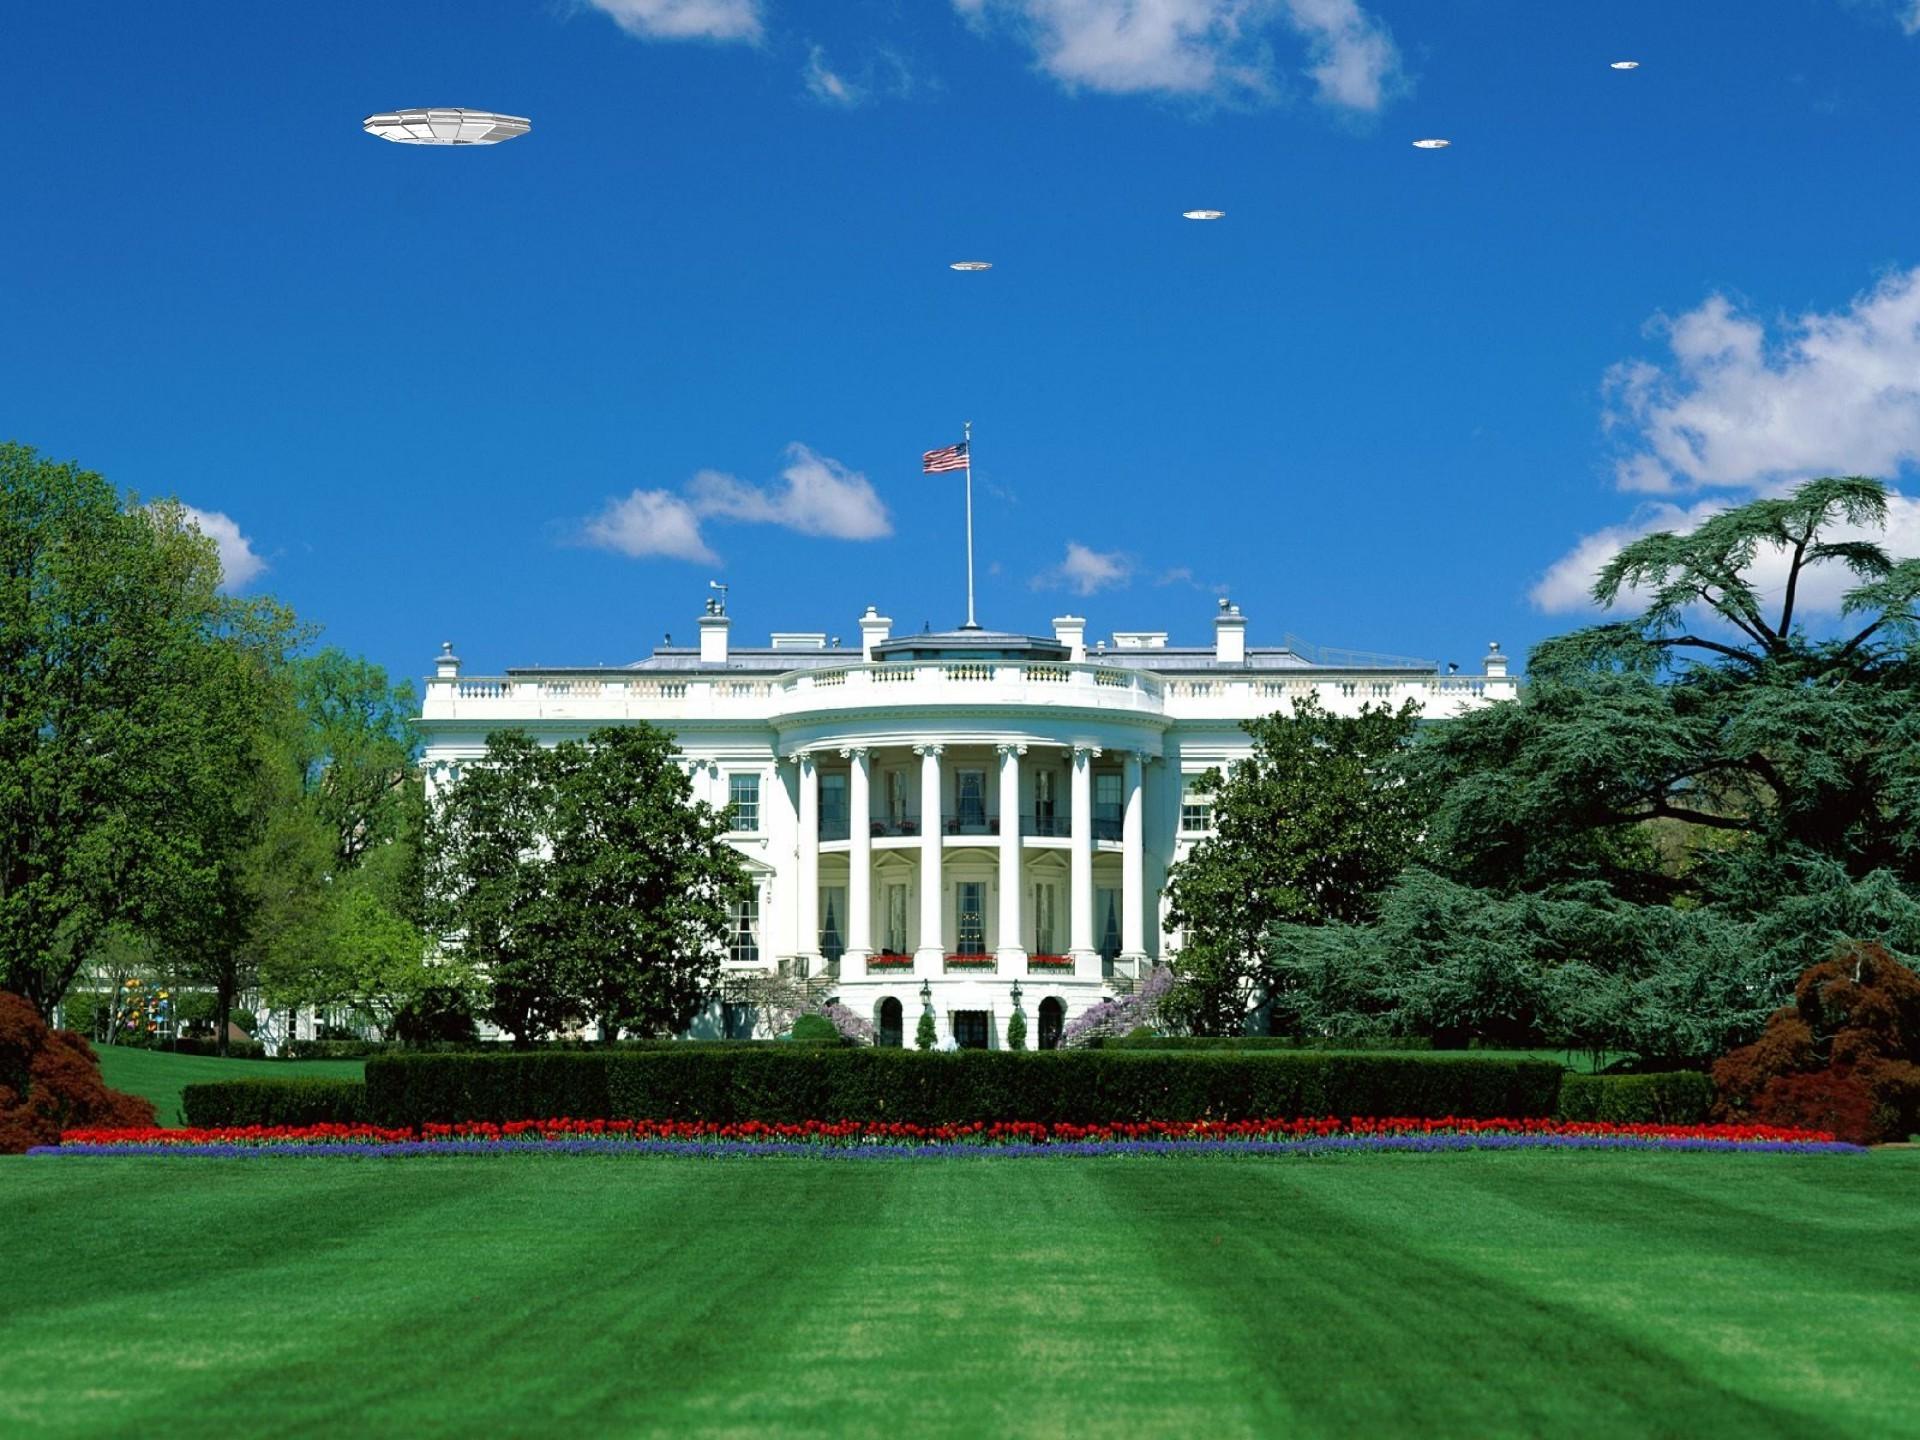 The white House in Washington